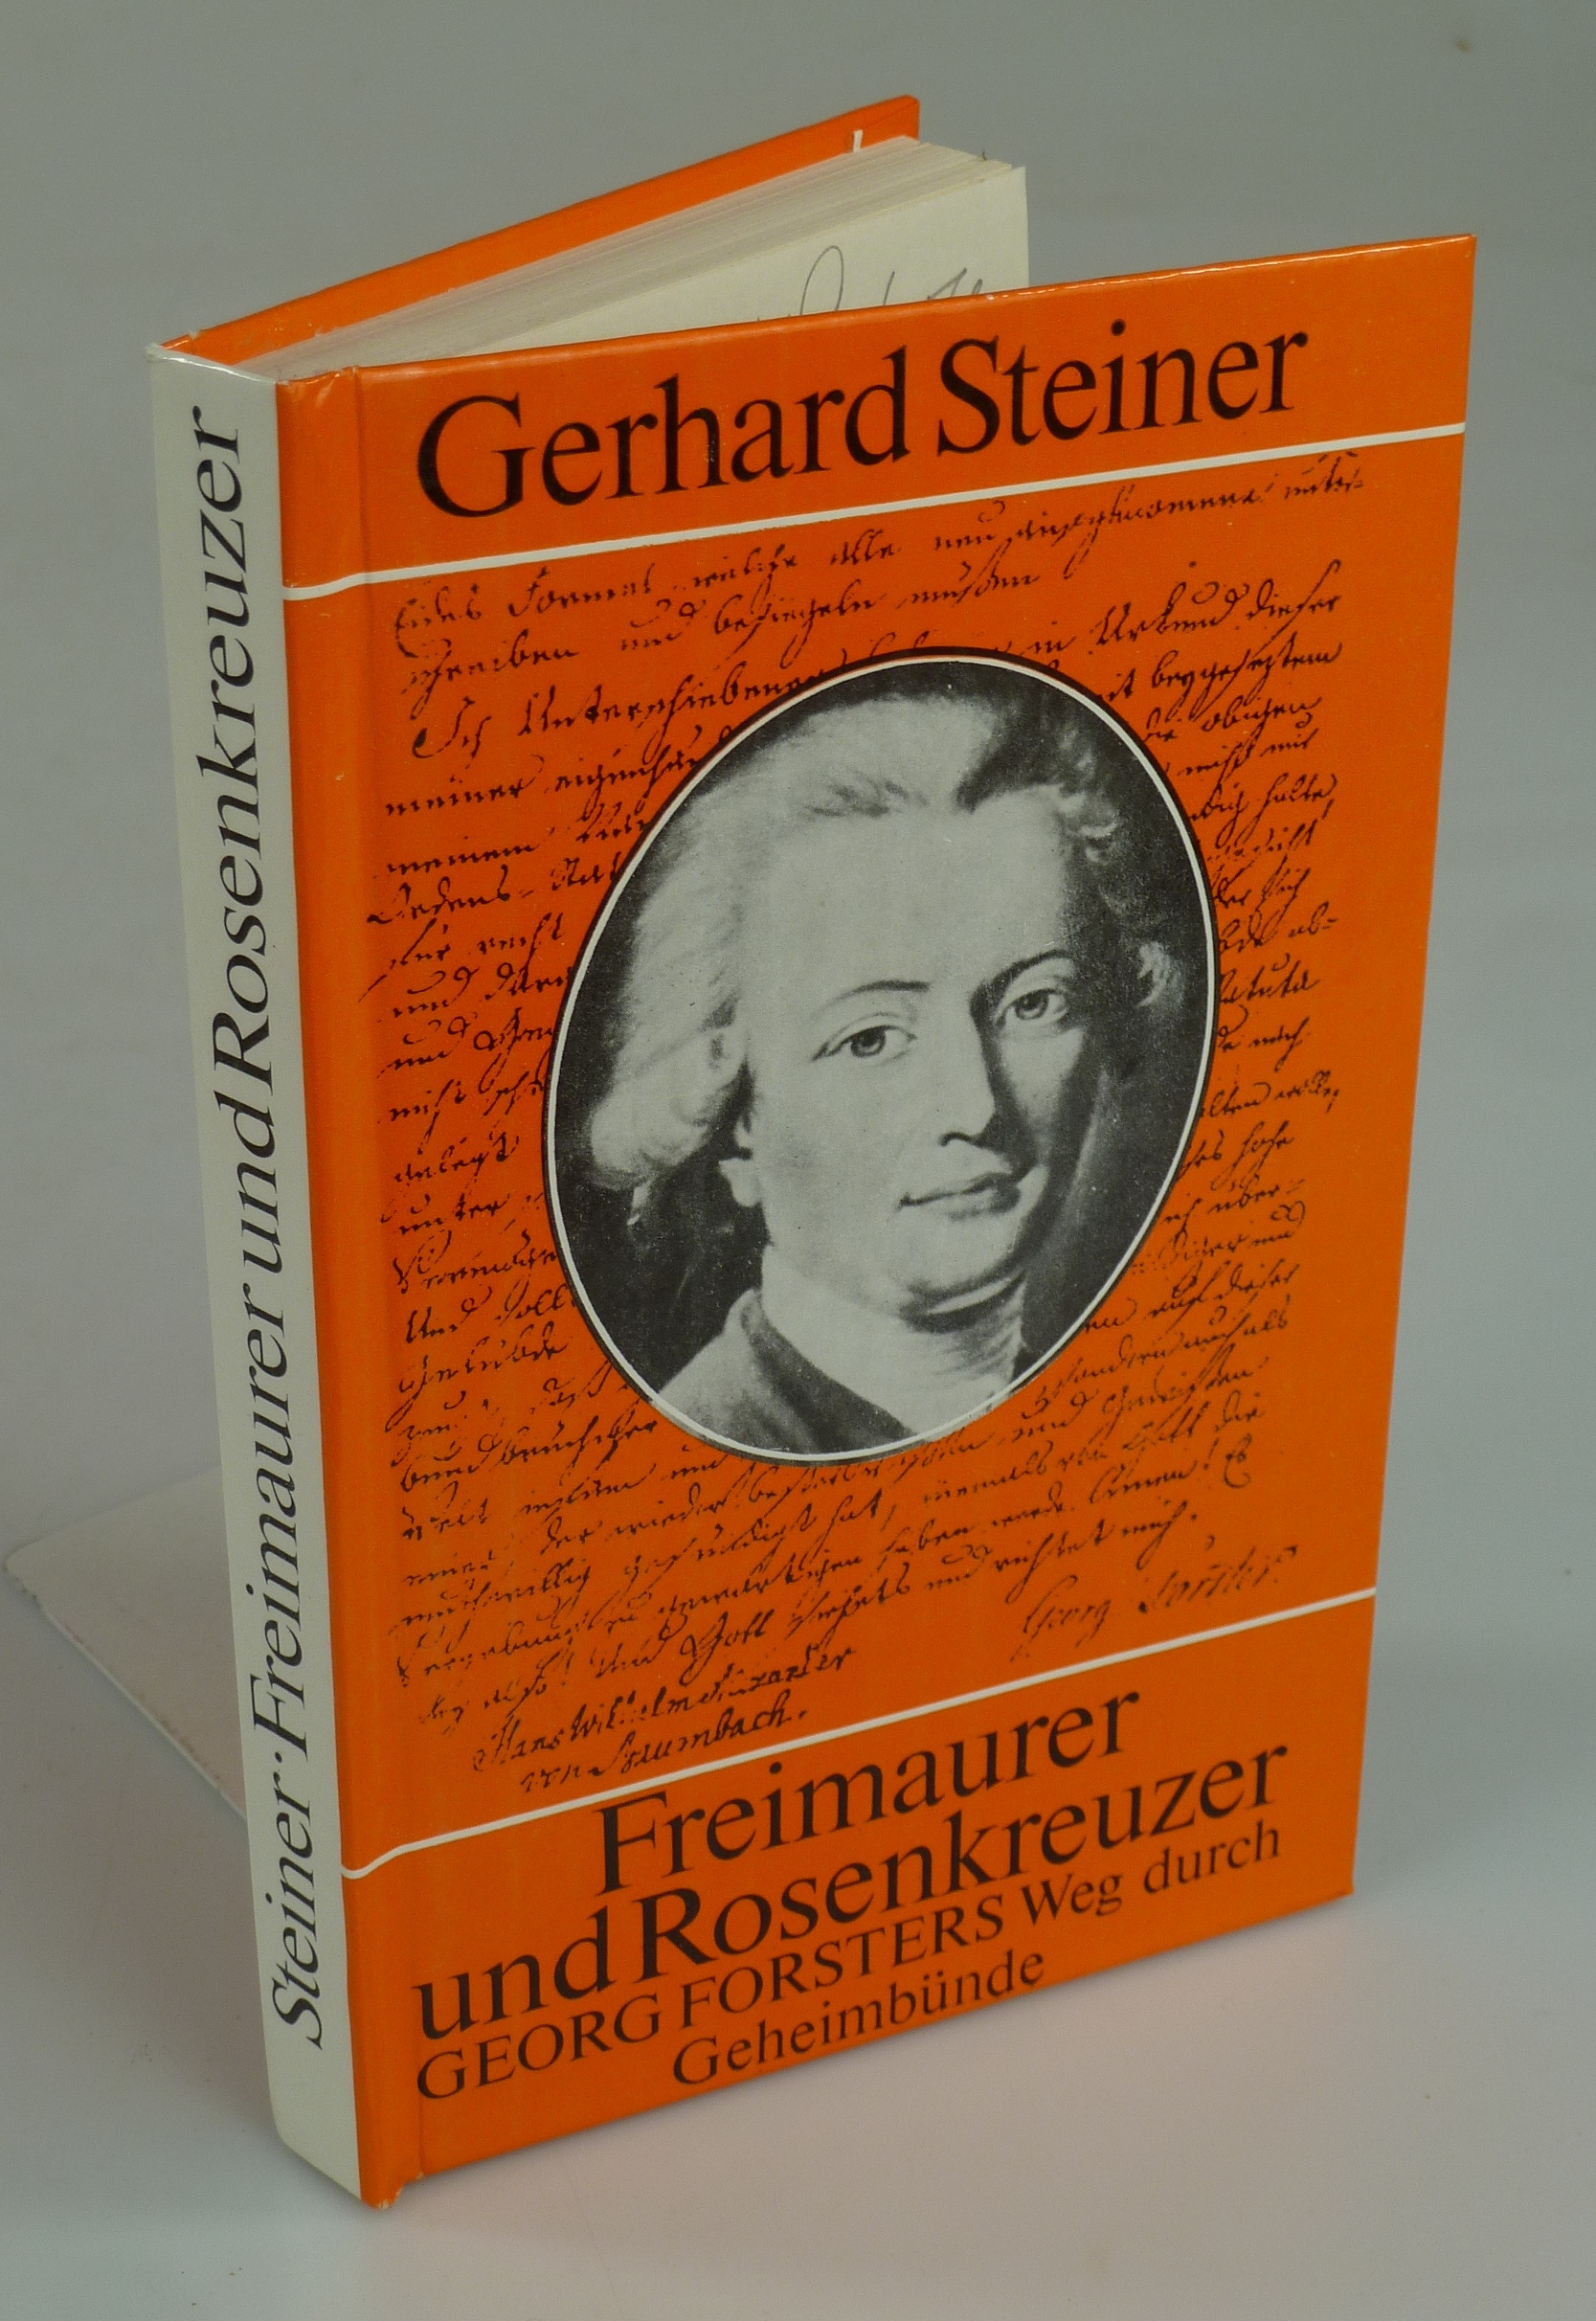 Freimaurer und Rosenkreuzer - Georg Forsters Weg durch Geheimbünde. - STEINER, Gerhard.